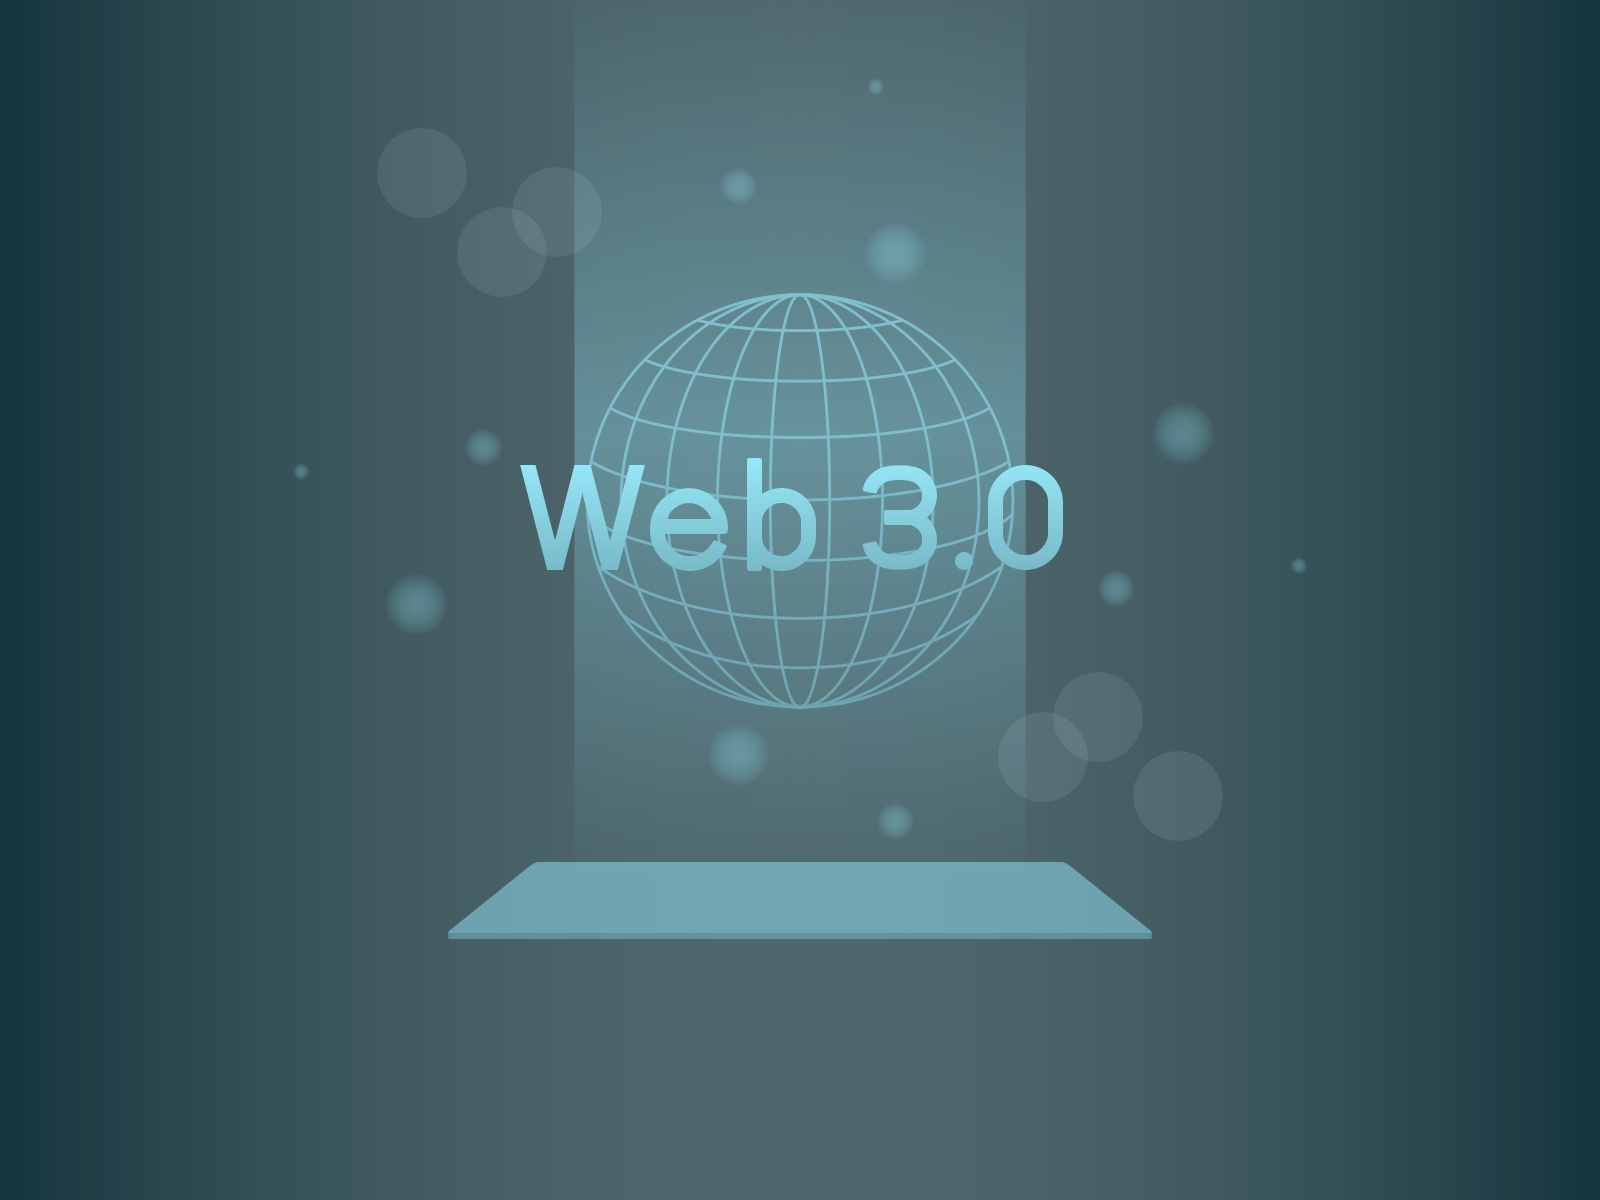 現役web3起業家集団「株式会社DeFimans」が取り組むweb3事業特化型コンサルティングファームのイメージ